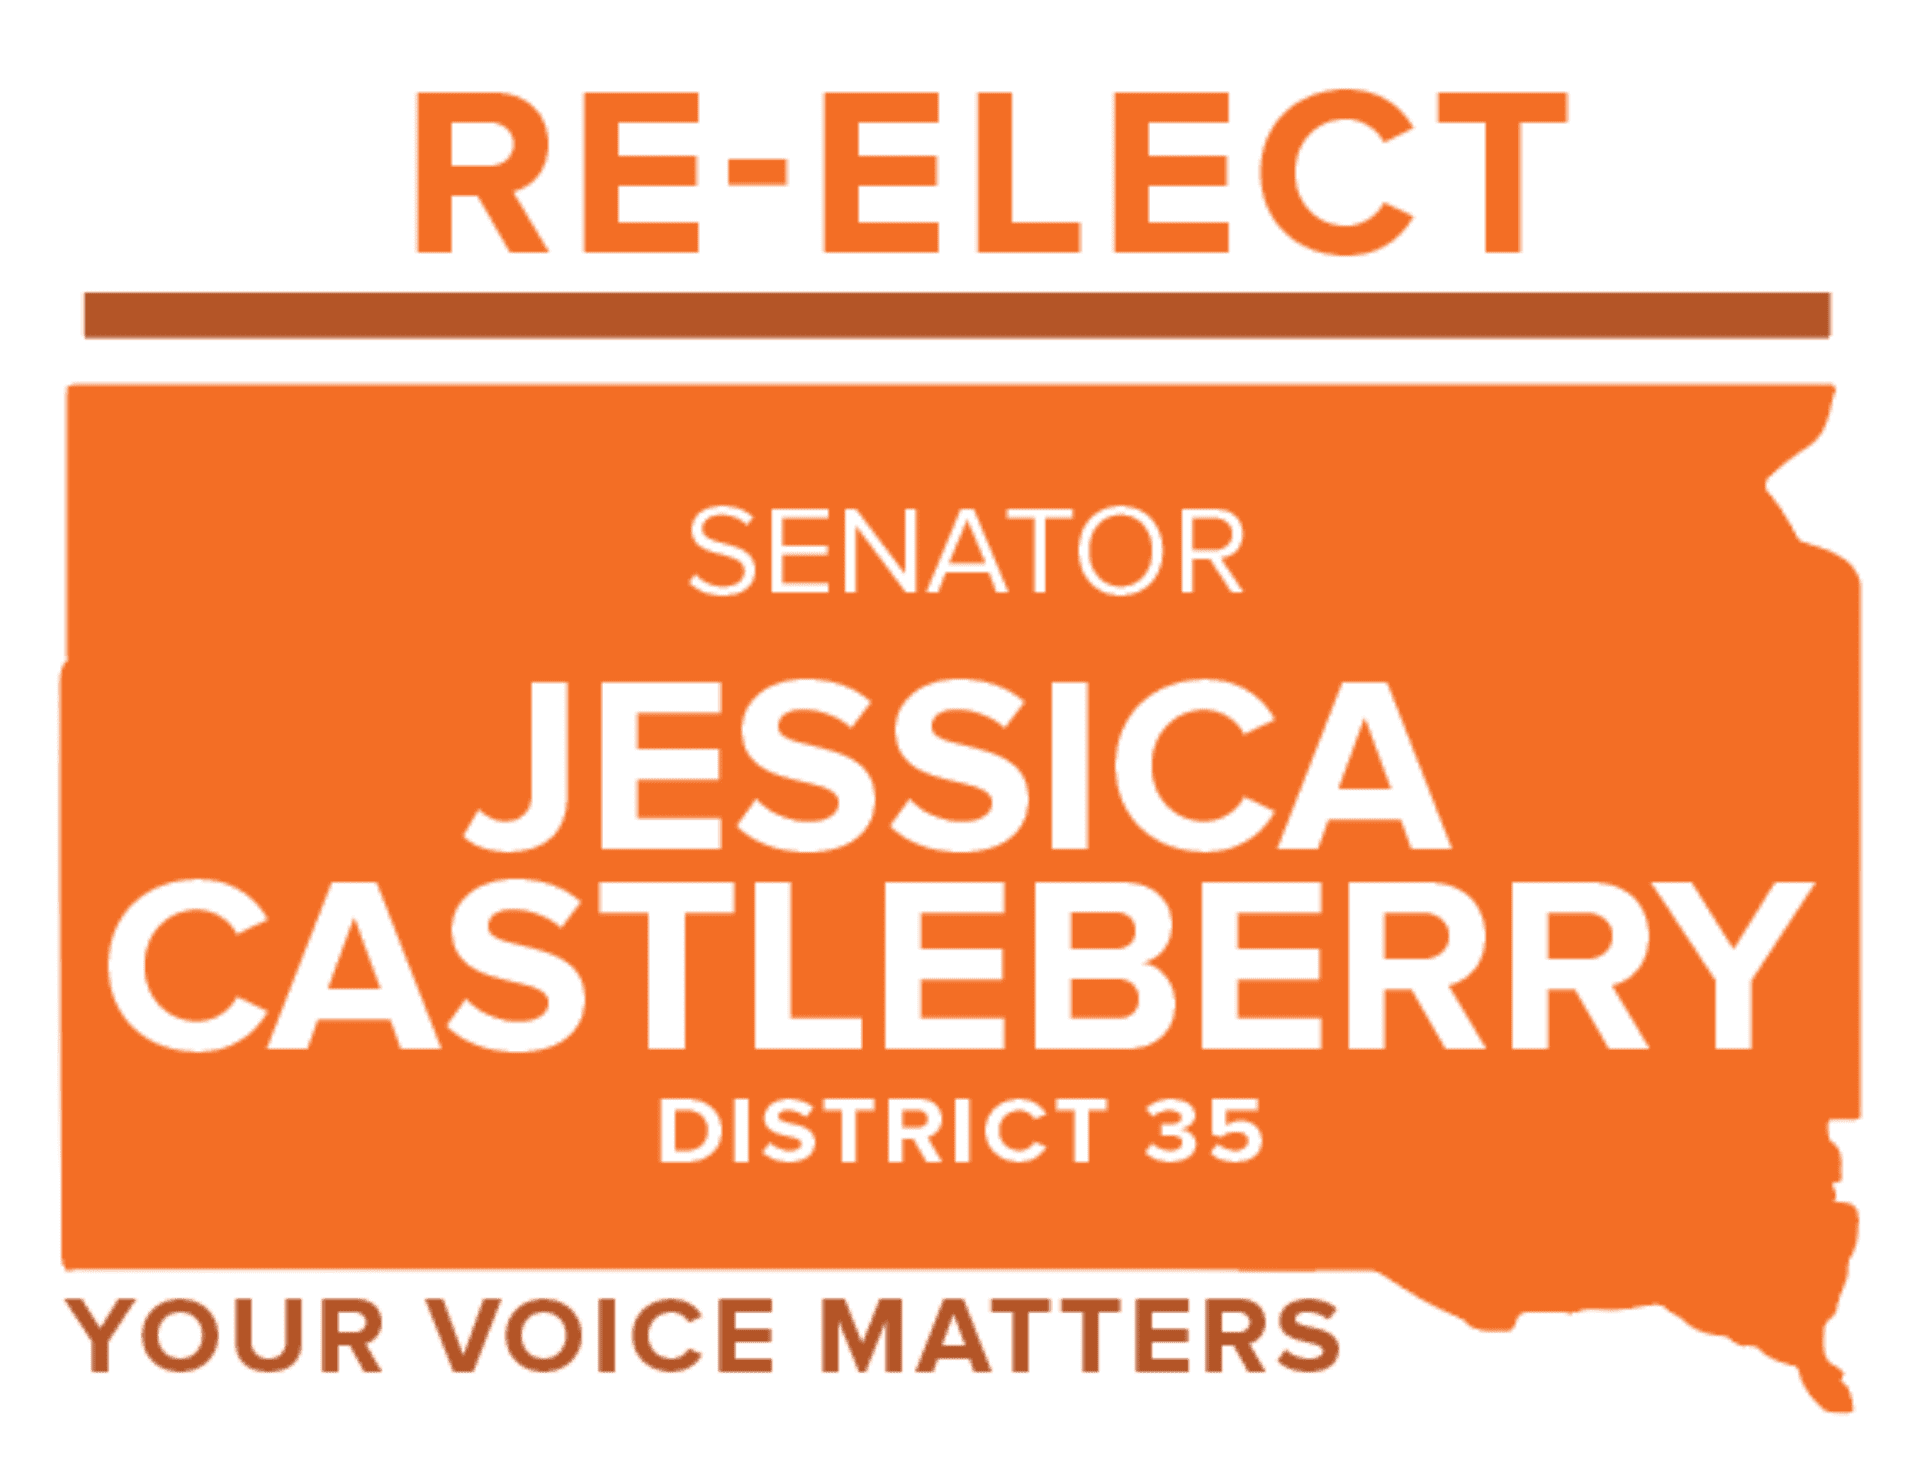 Re elect jessica castleberry